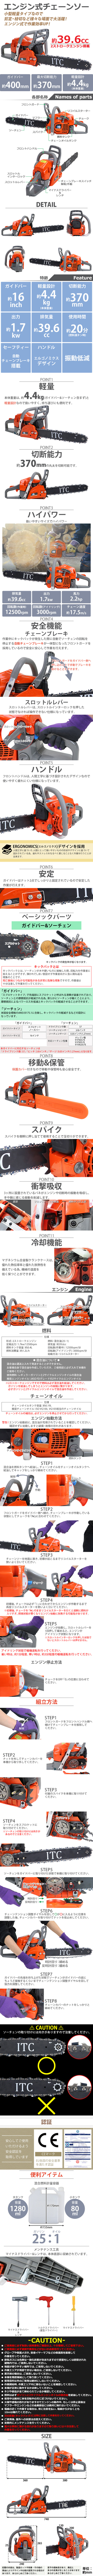 日本製造送料無料 チェーンソー エンジン式 16インチ 最大切断径37cm 排気量約39.6cc 馬力2.2hp エコノミードモデル 軽量 2ストロークエンジン チェーンソー